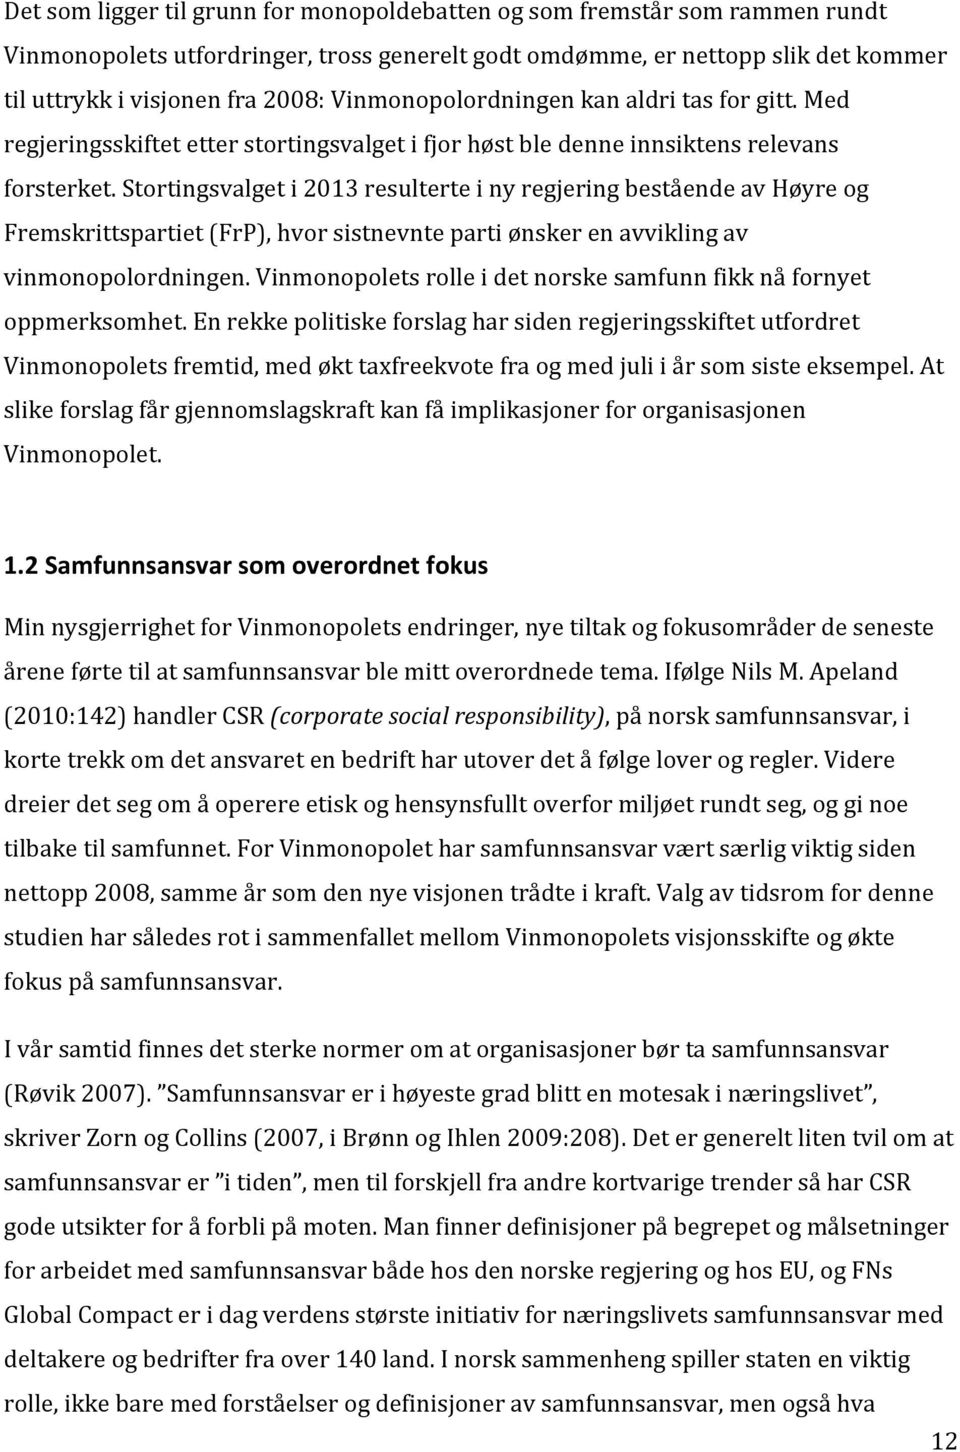 Stortingsvalget i 2013 resulterte i ny regjering bestående av Høyre og Fremskrittspartiet (FrP), hvor sistnevnte parti ønsker en avvikling av vinmonopolordningen.